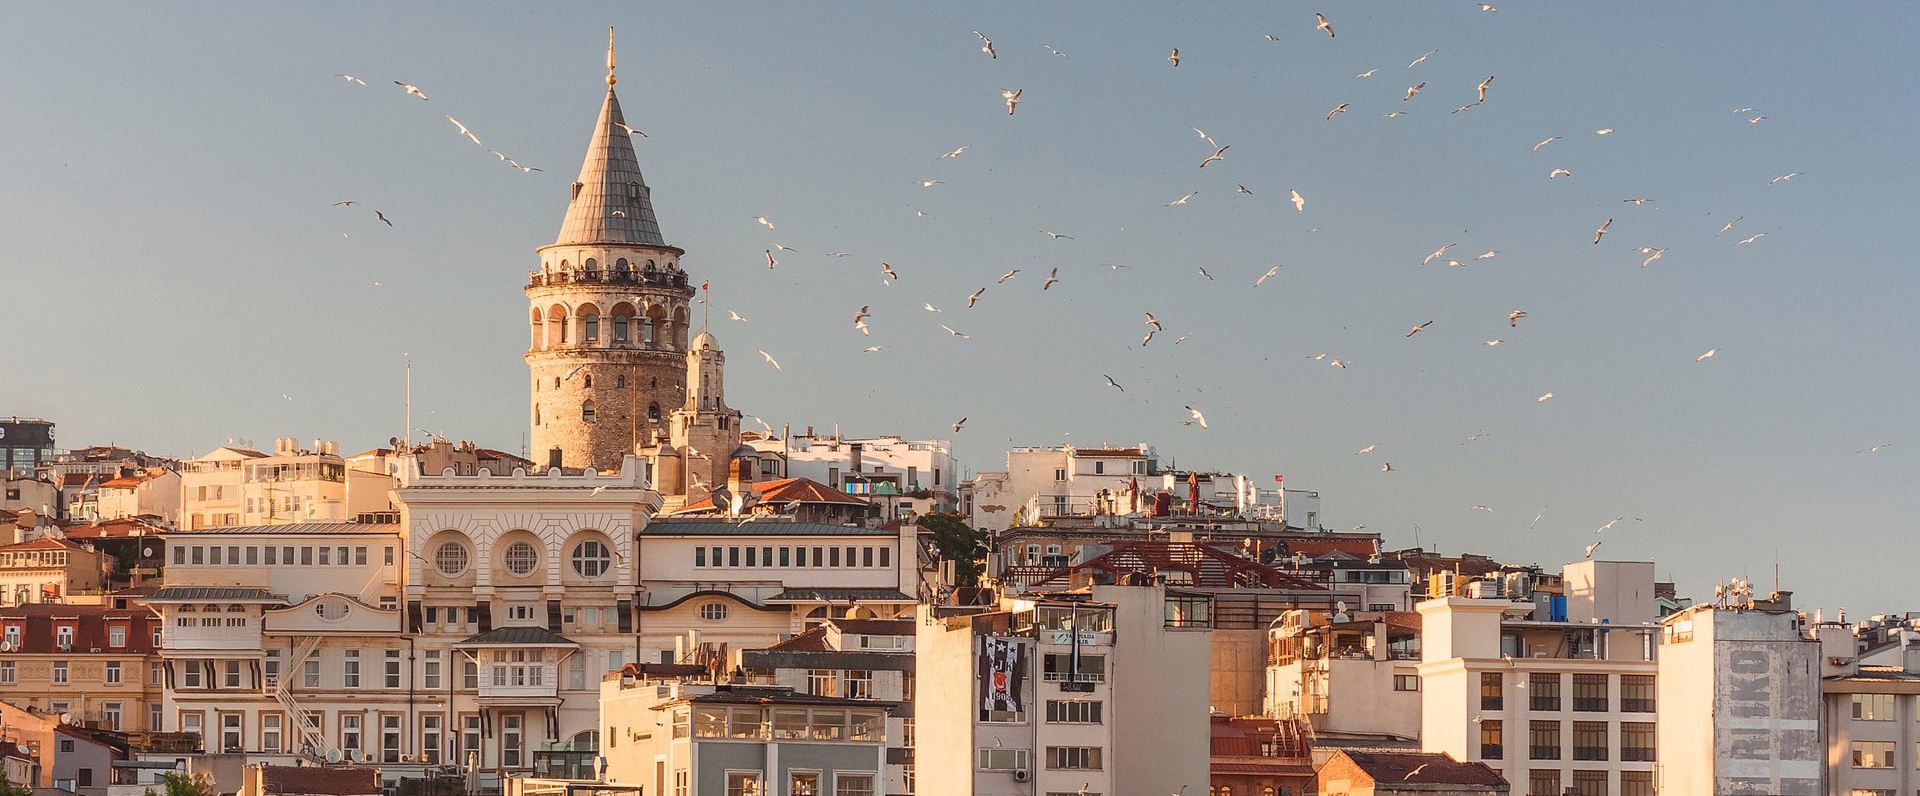 Découvrez nos séjours de luxe en vente privée - Istanbul. VeryChic vous propose des voyages jusqu’à -70% dans les plus beaux hôtels du monde - Istanbul